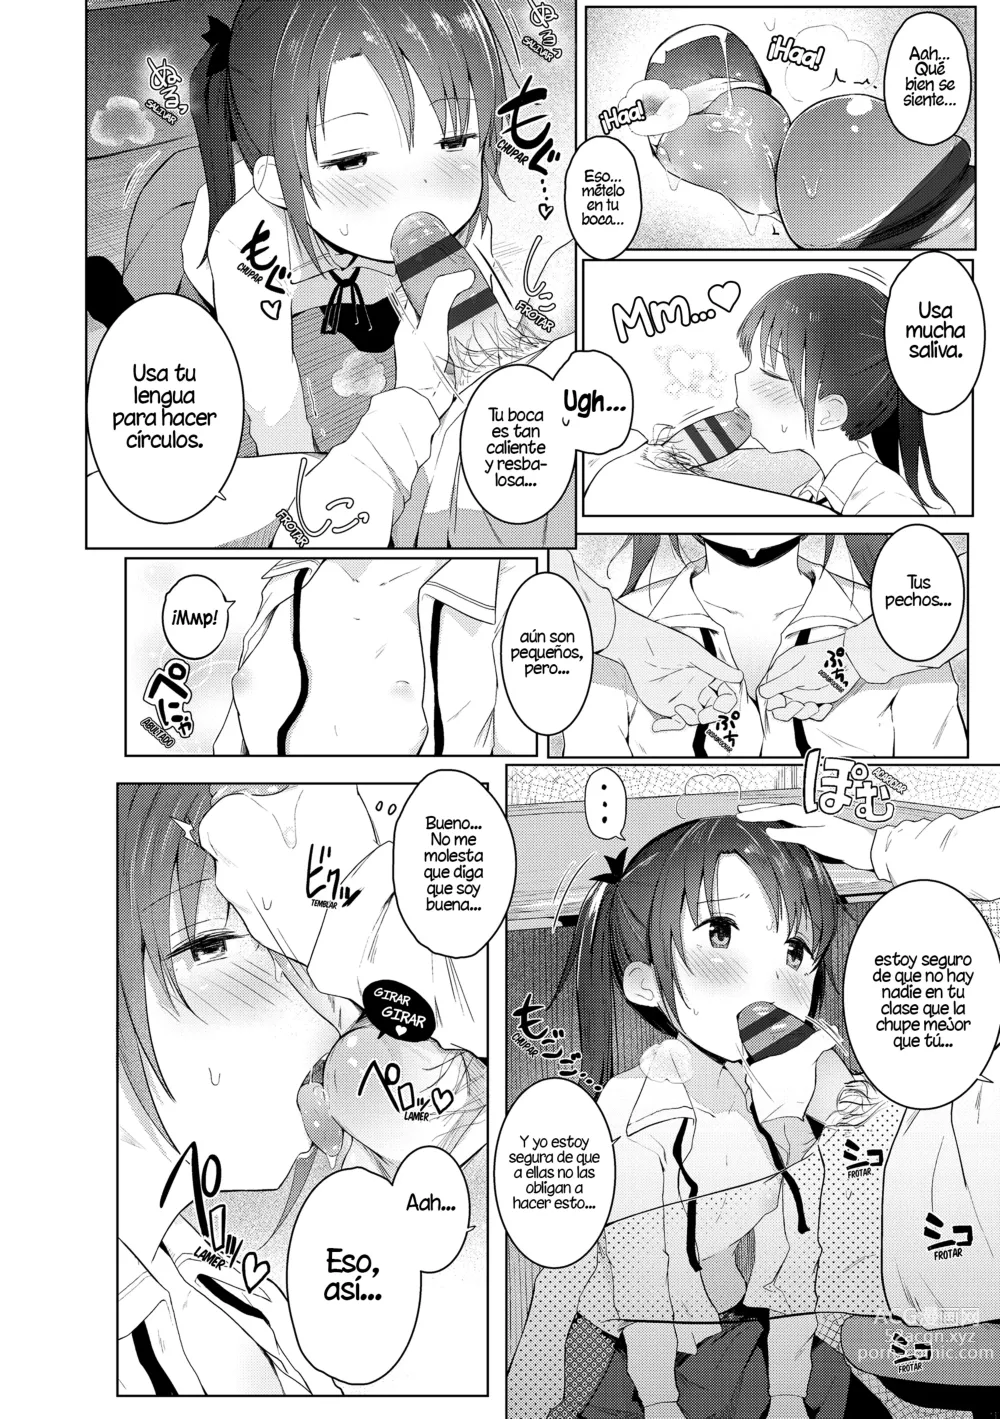 Page 4 of manga Con la ayuda de mi hermana